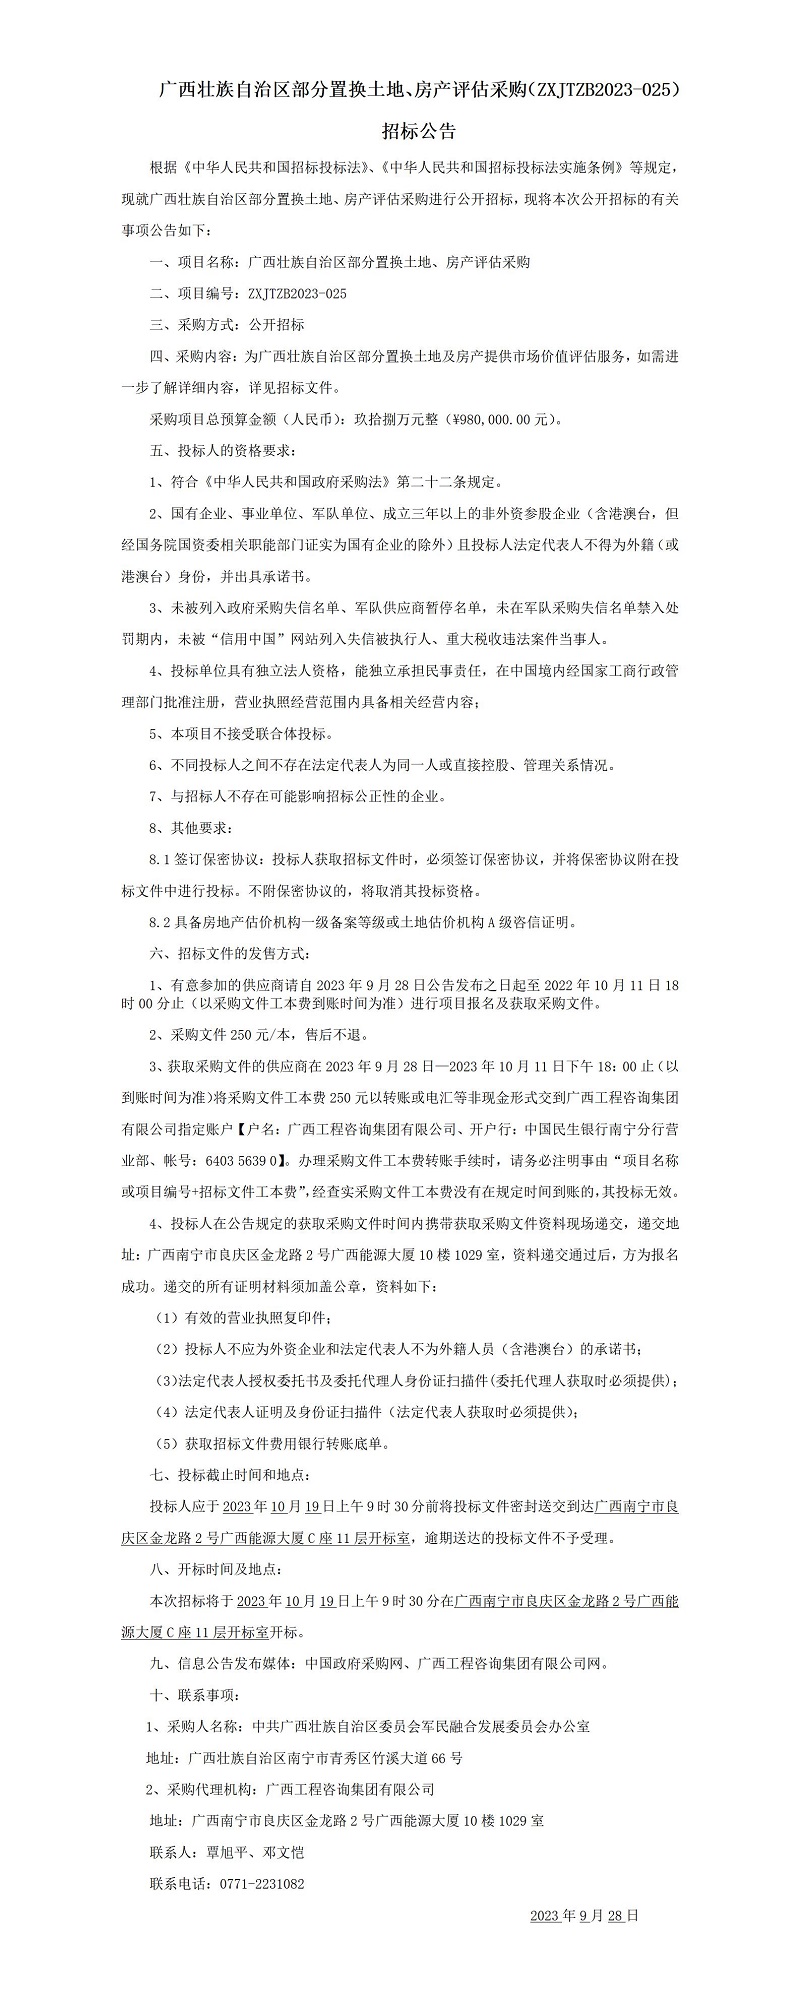 广西壮族自治区部分置换土地、房产评估采购（ZXJTZB2023-025） 招标公告